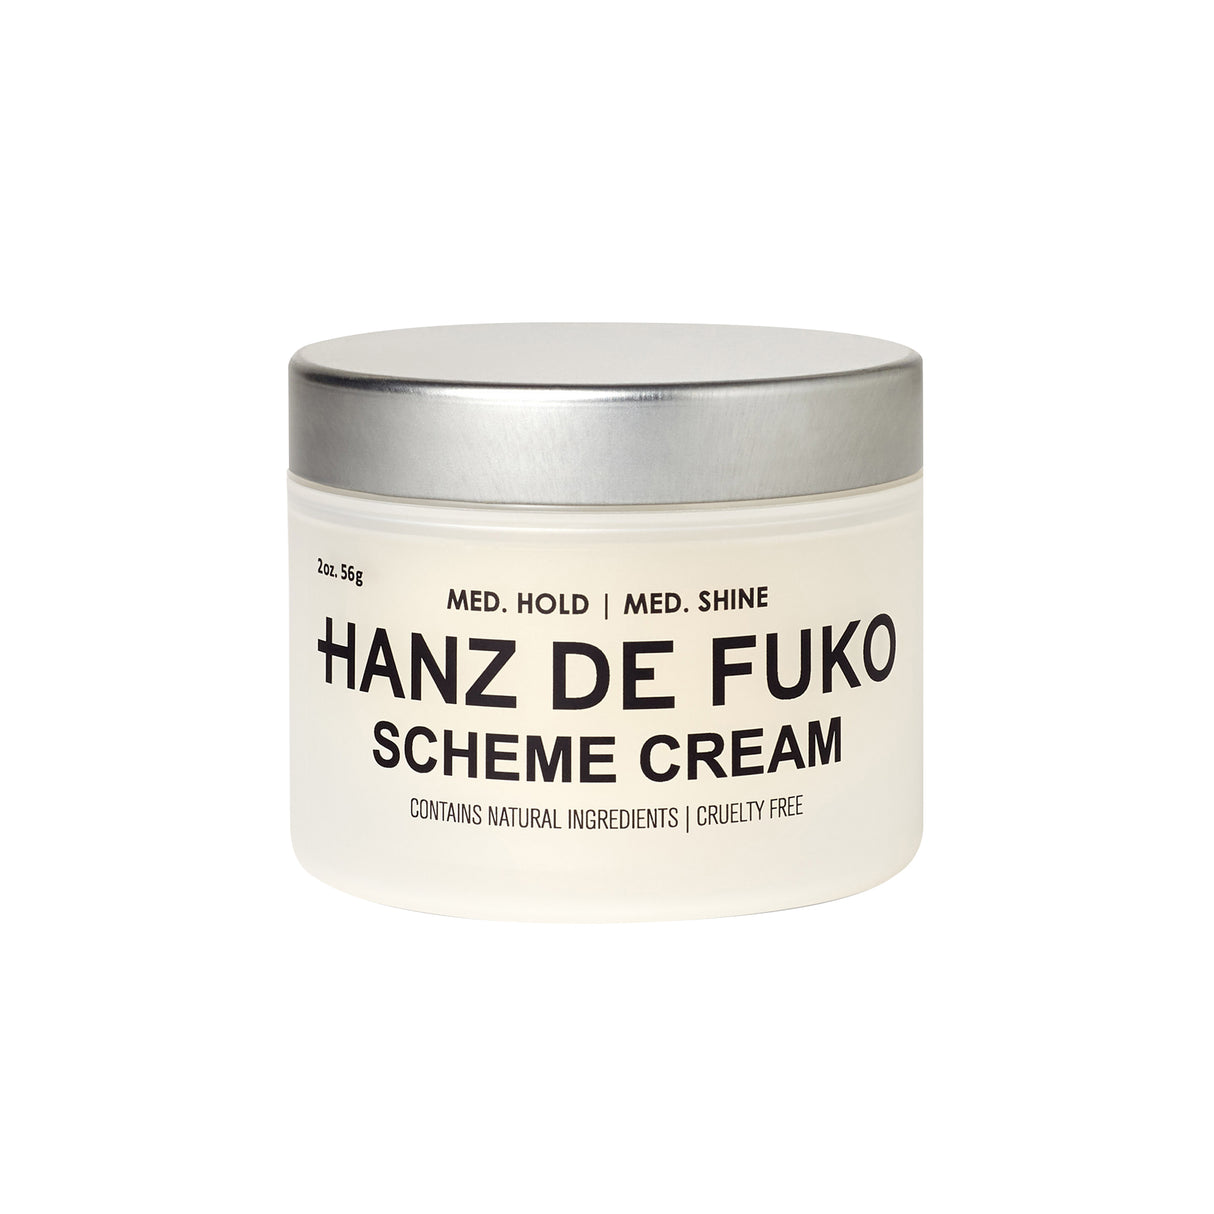 Scheme Cream